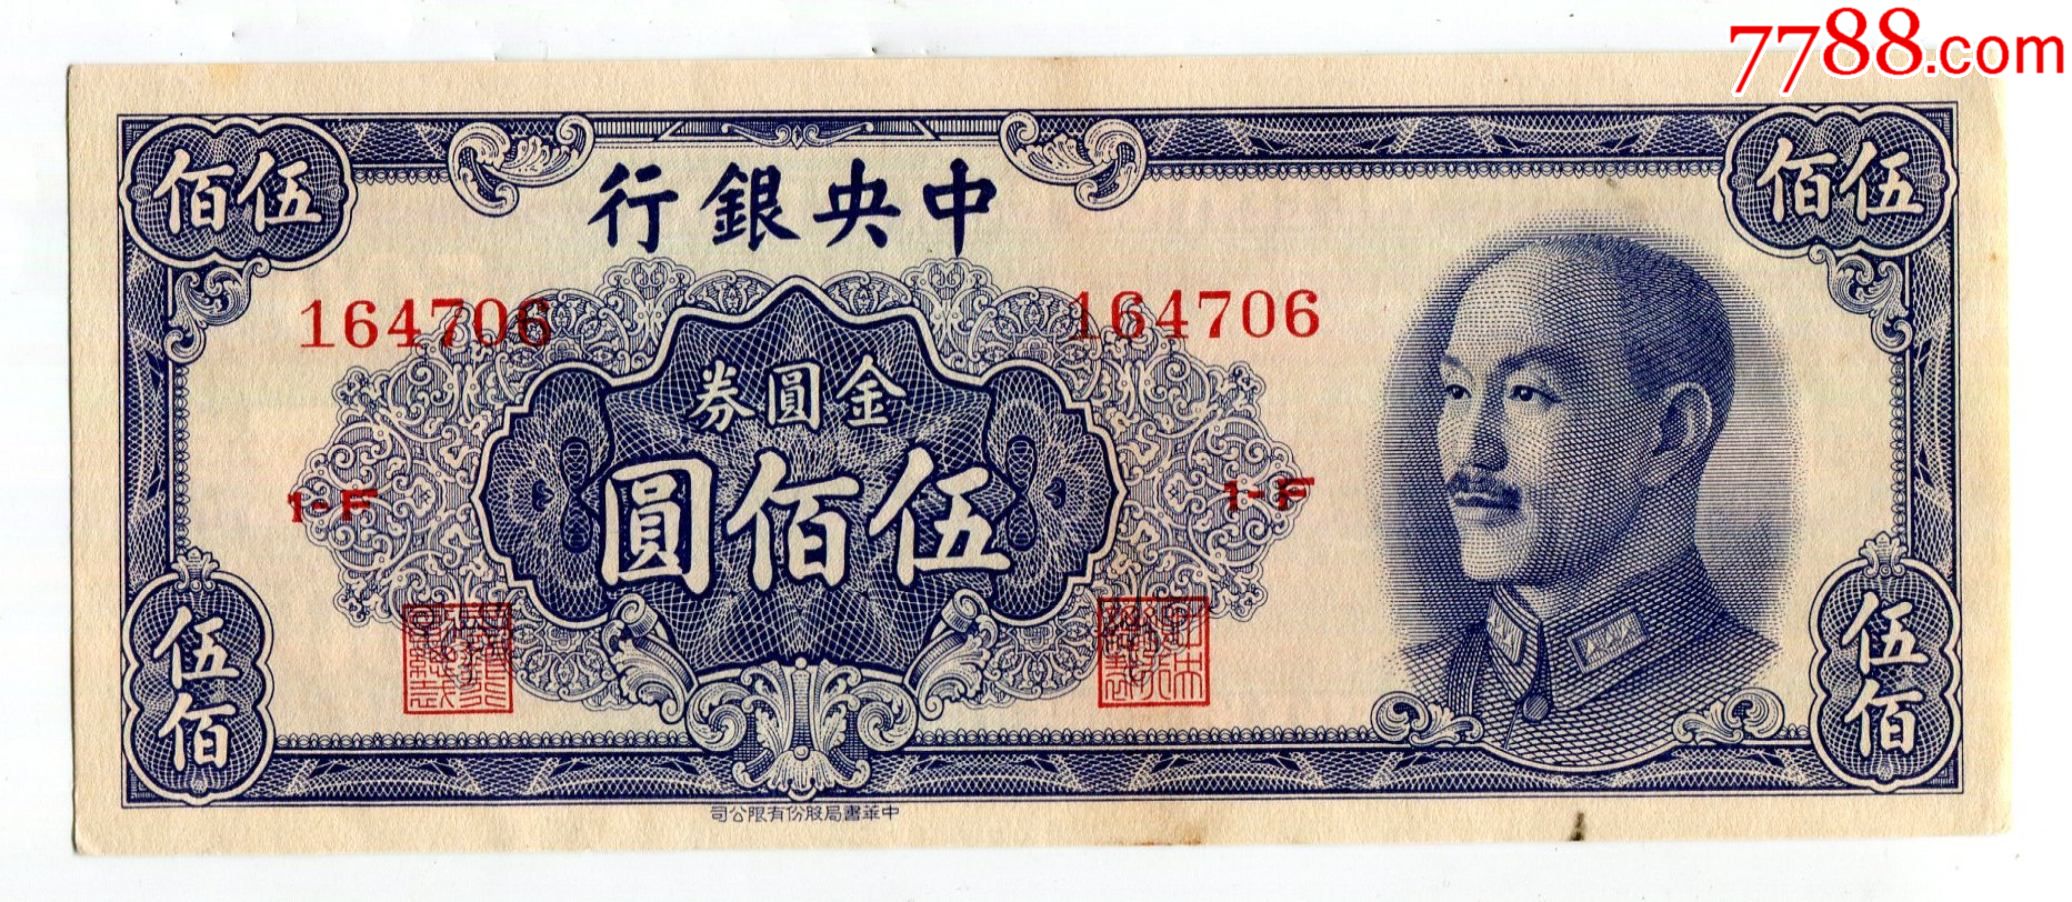 500元纪念币人民币图片